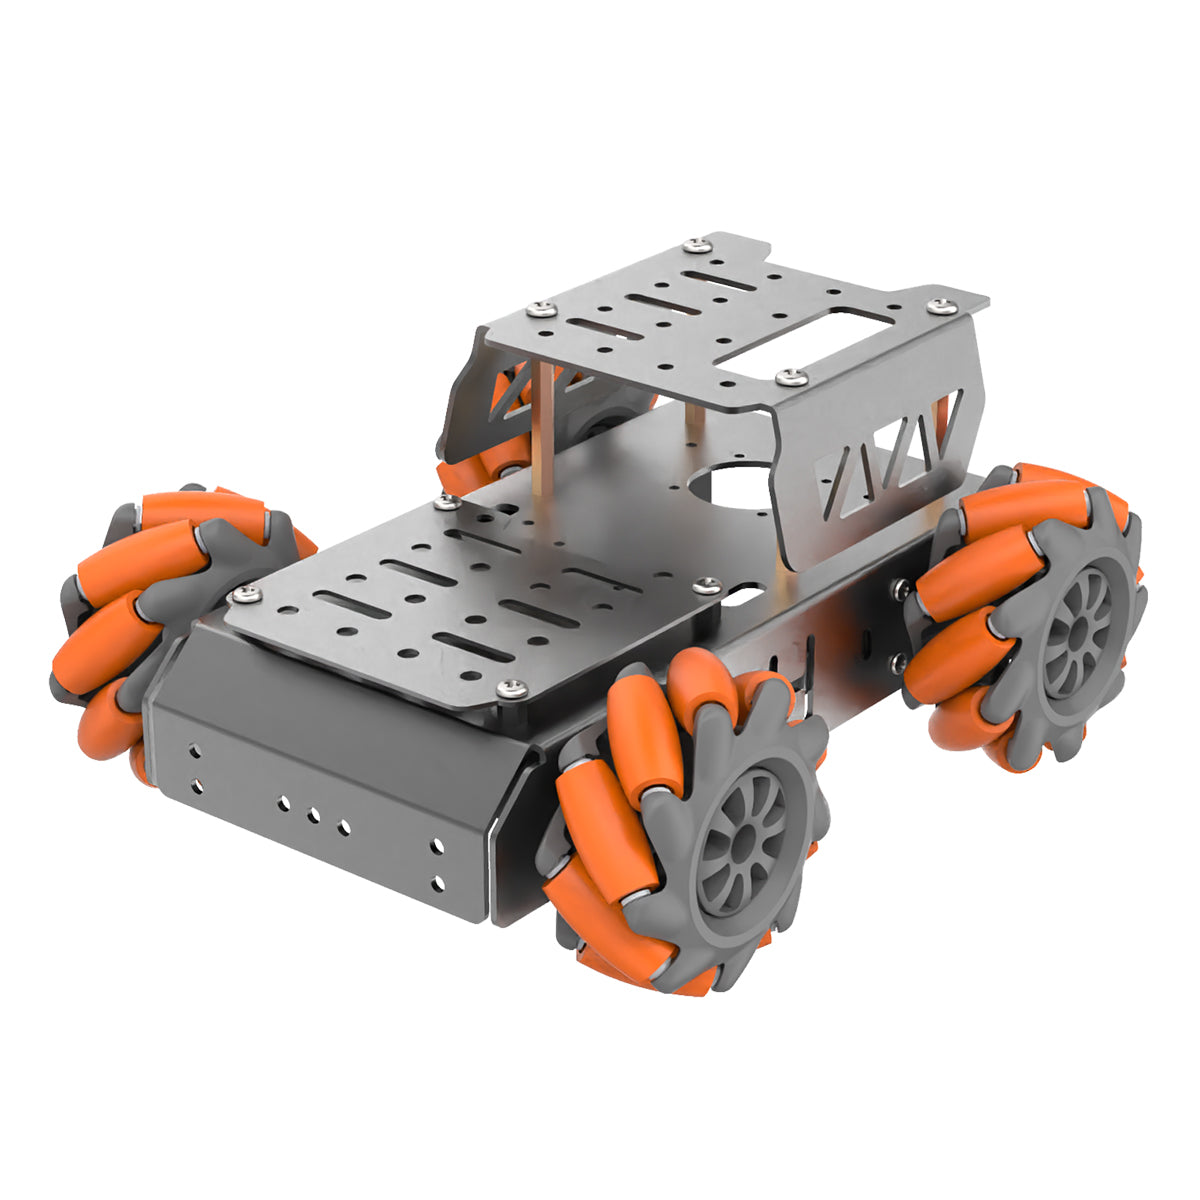 Hiwonder Mecanum Wheel Chassis Car Kit with TT Motor, Aluminum Alloy Frame, Smart Car Kit for DIY Education Robot Car Kit